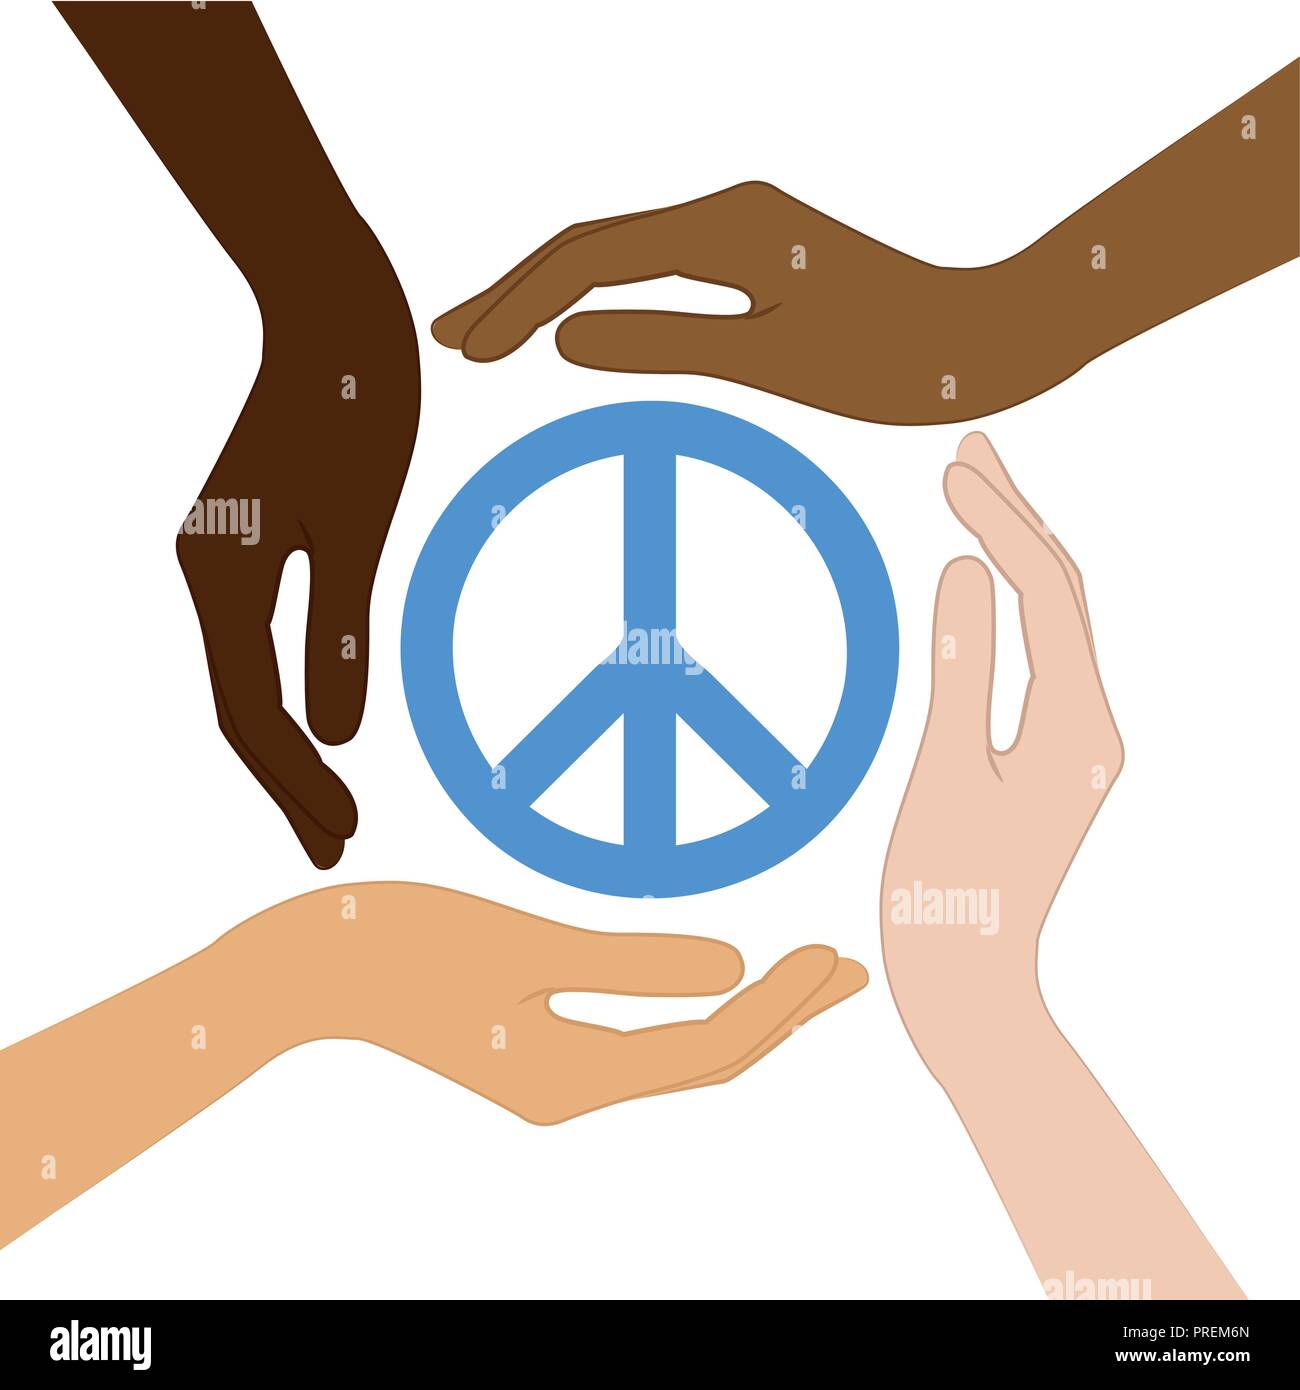 Simbolo di pace nel mezzo di mani umane differenti colori di pelle illustrazione vettoriale EPS10 Illustrazione Vettoriale